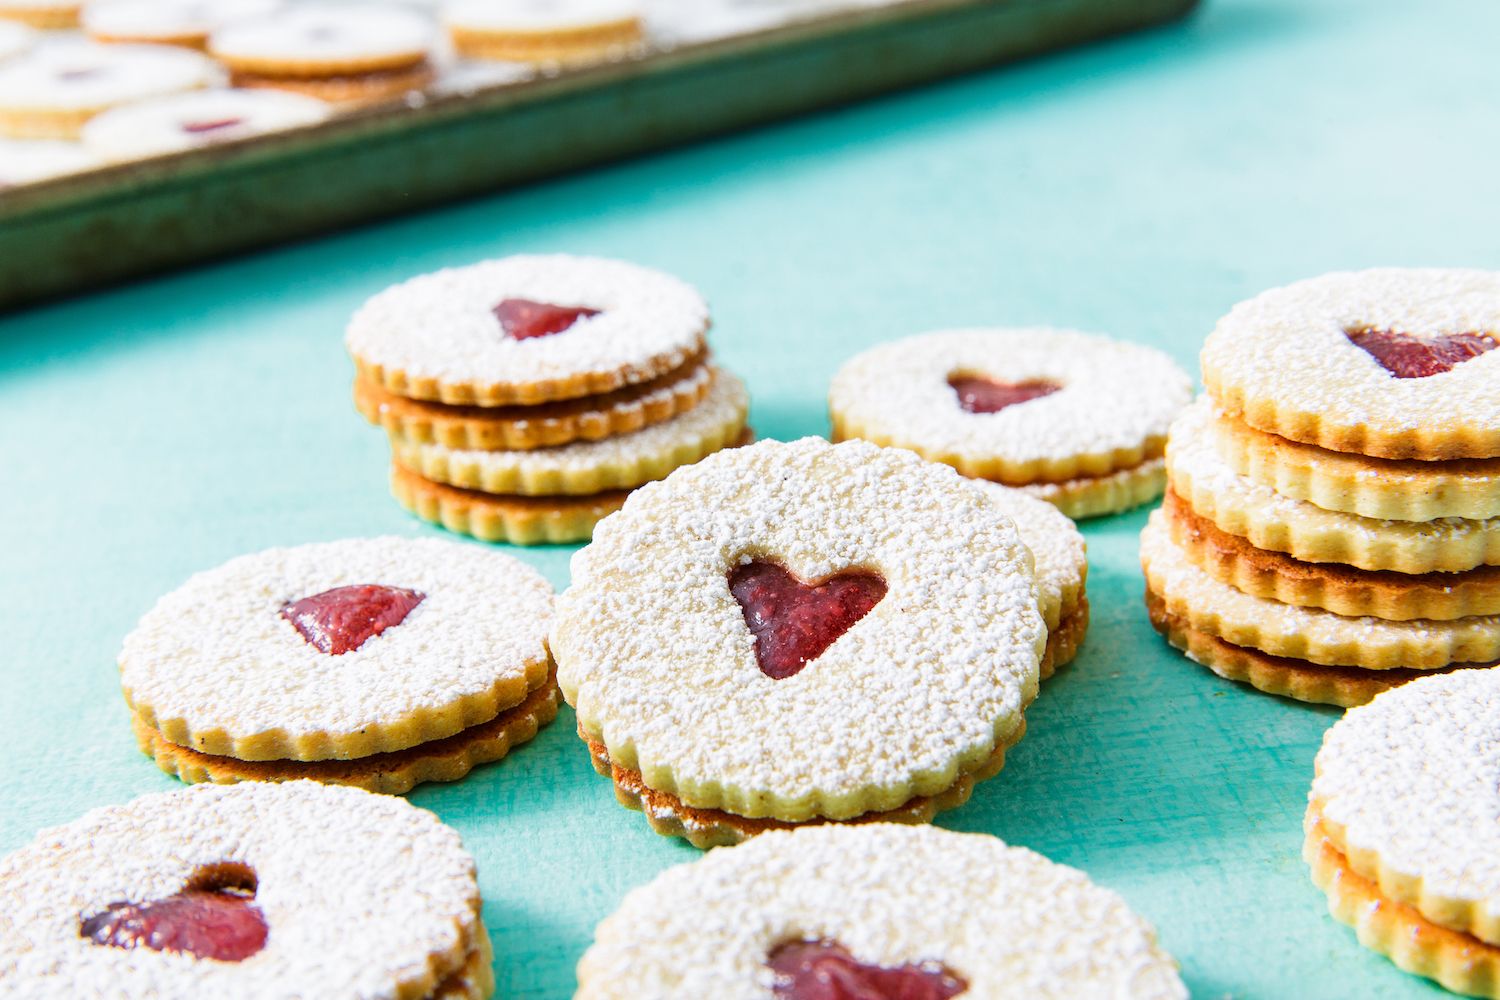 Cookie Heart Earrings Miniblings Baking Christmas Biscuits Jam